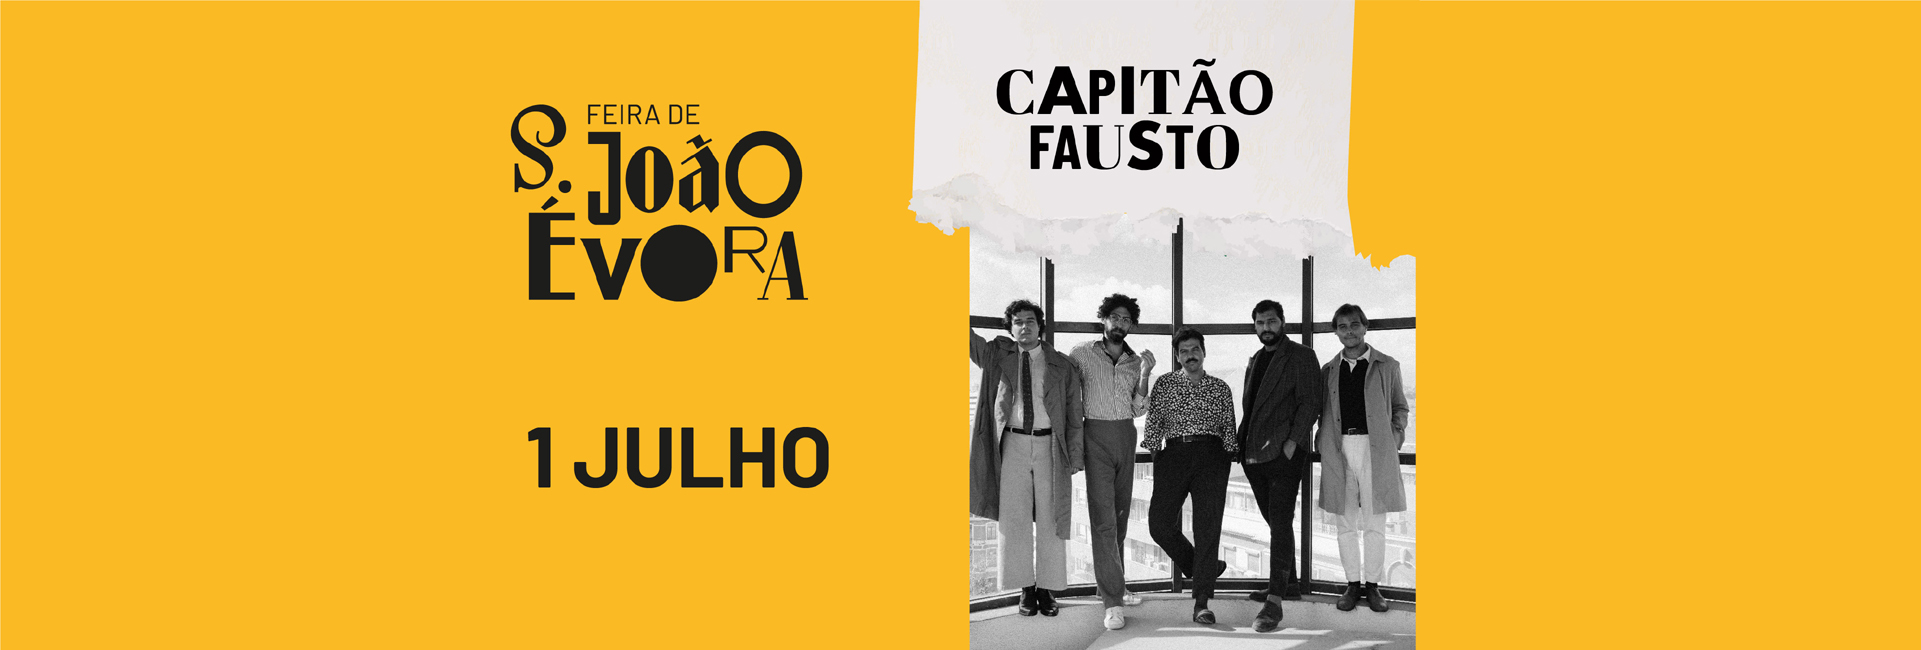 (Português) CAPITÃO FAUSTO | Feira de S. João 2022